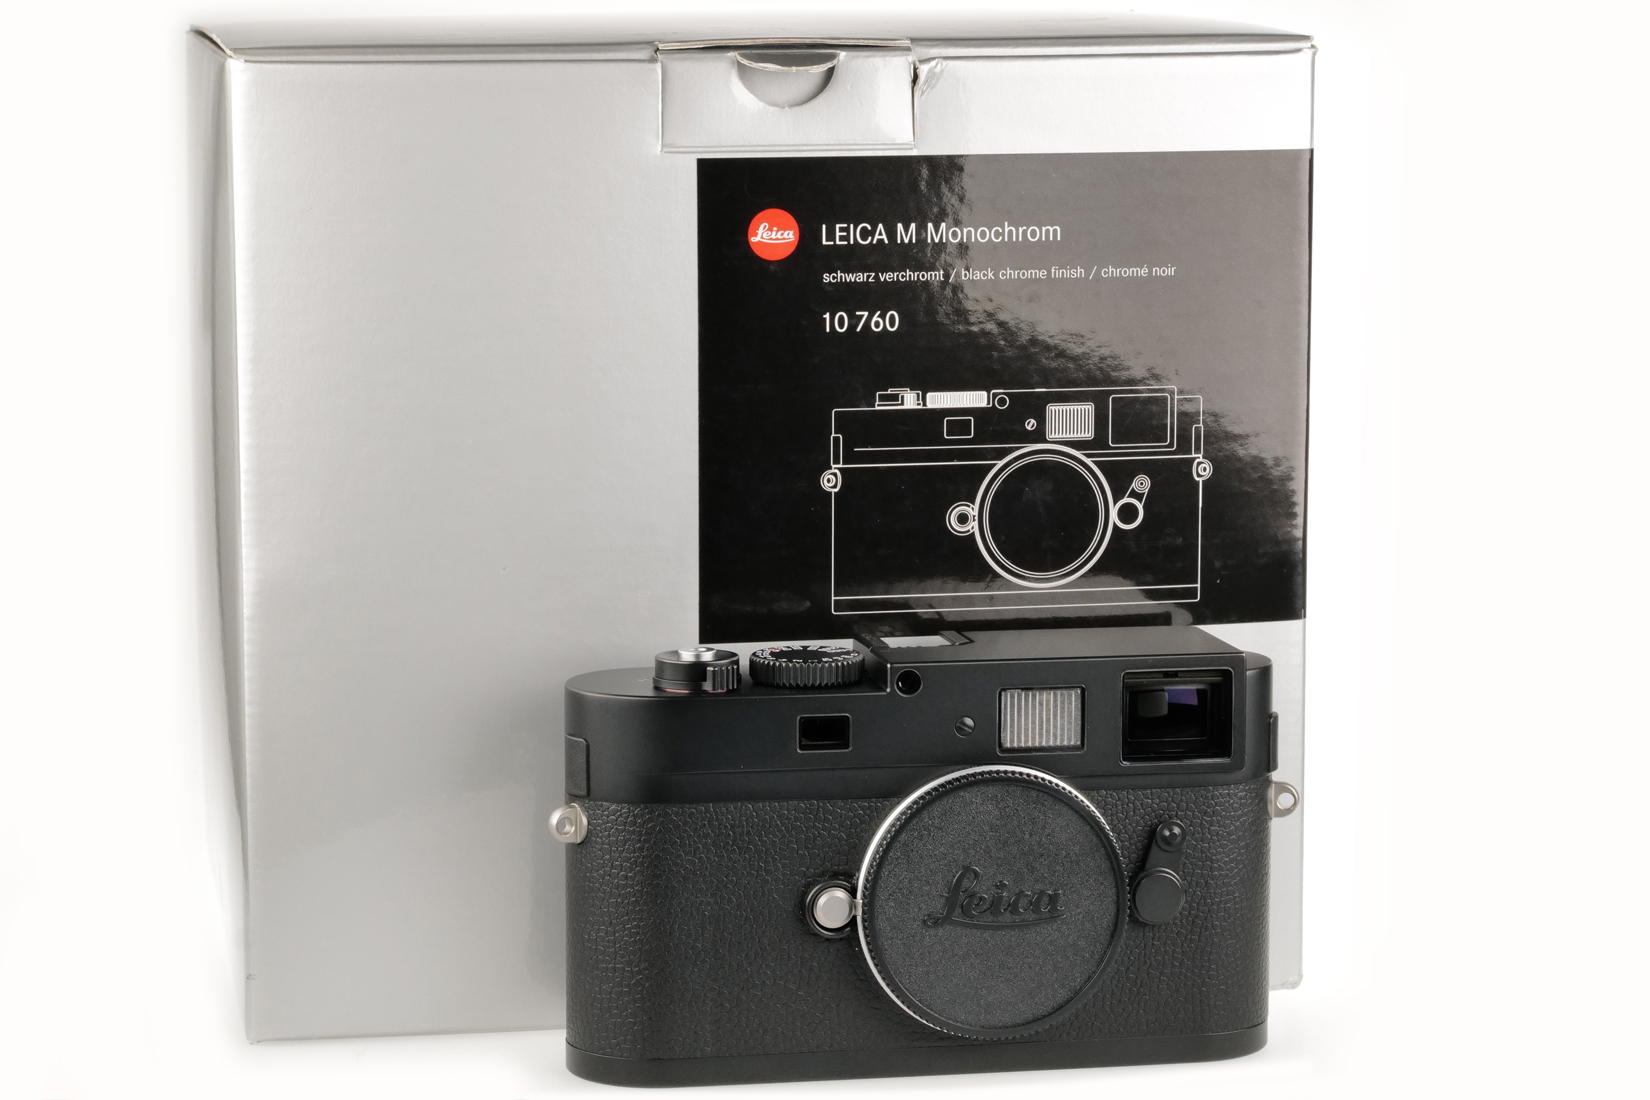 Leica M9 Monochrom, black chrome finish 10760 replaced sensor